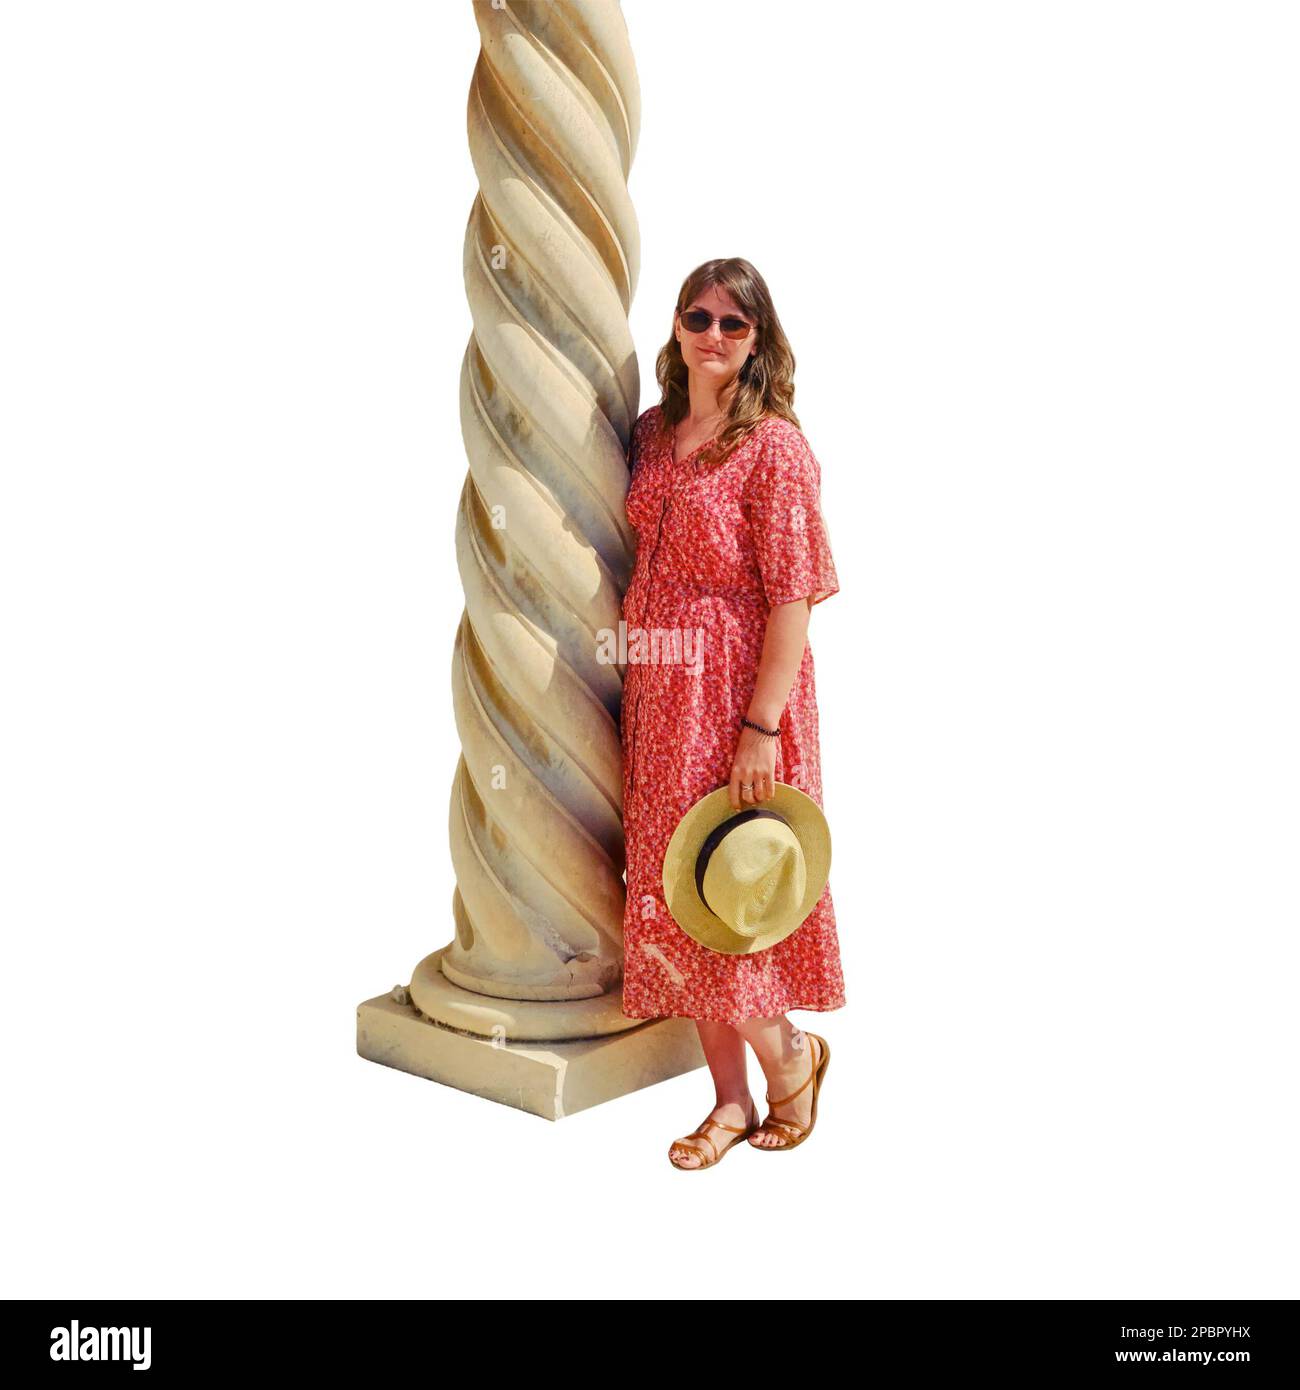 Una donna si trova accanto alle colonne a spirale ritorte di un tempio medievale francese a Cartagine, Tunisia, isolato su uno sfondo bianco Foto Stock